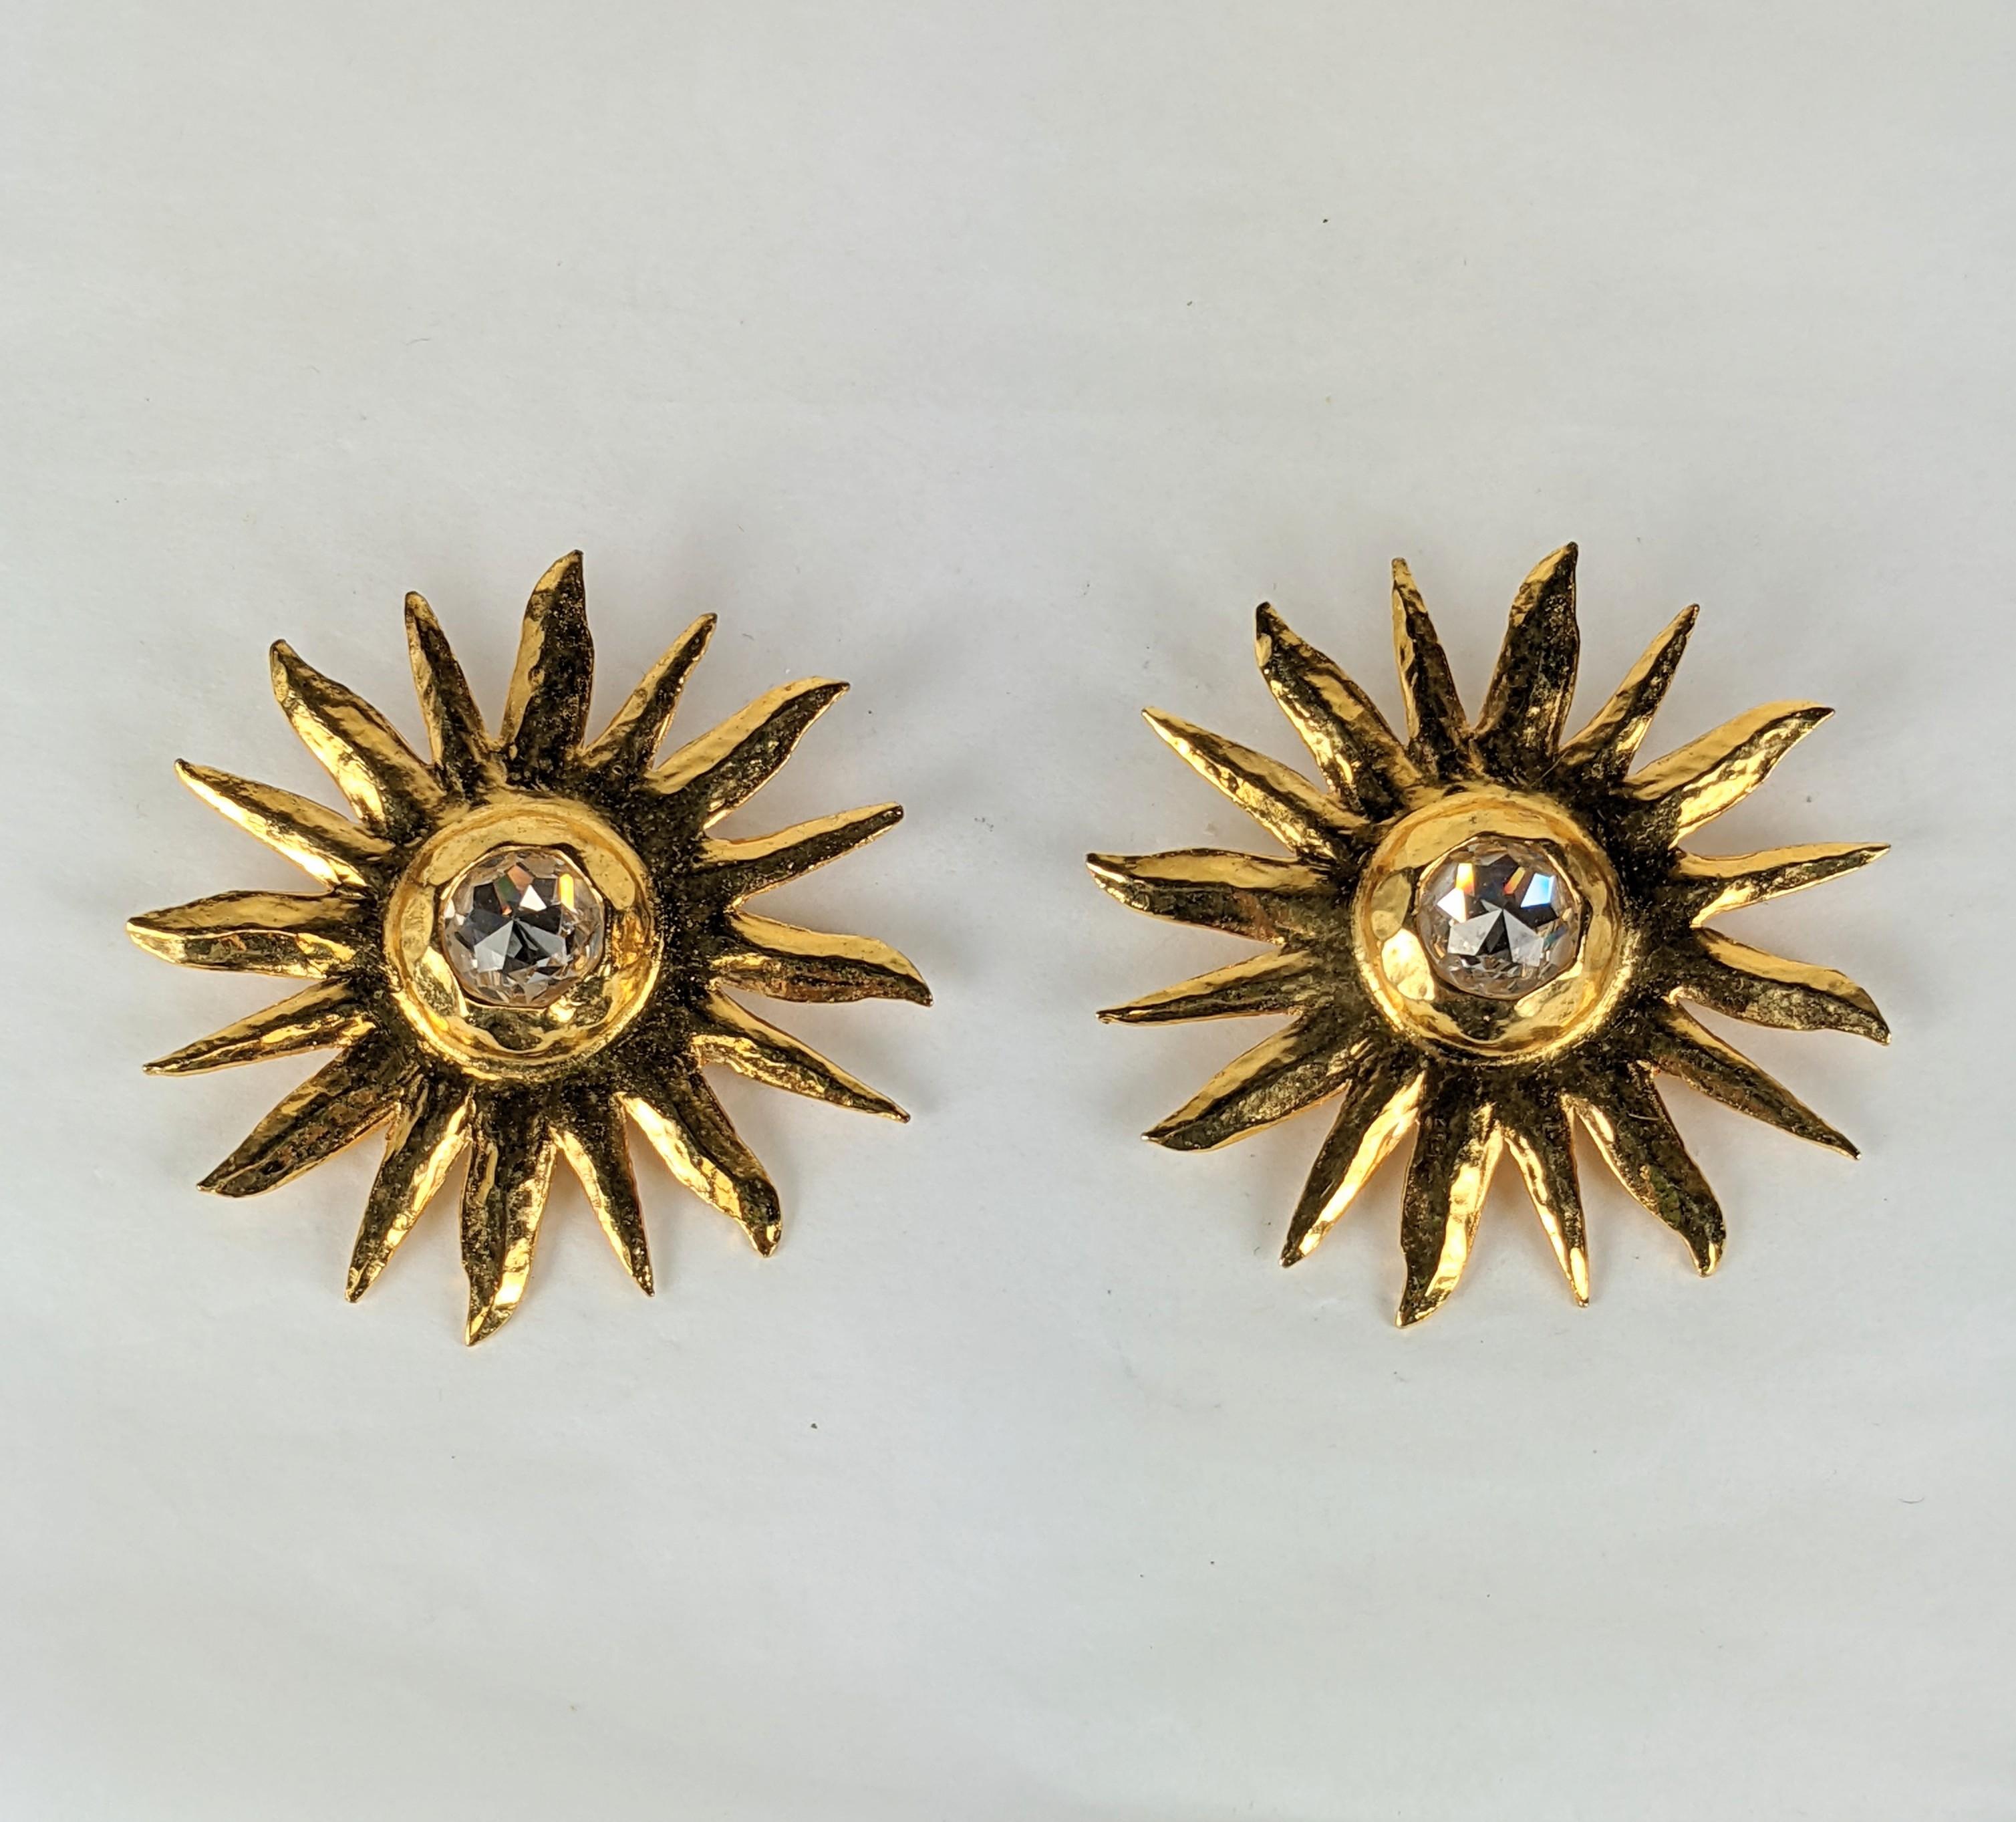 Auffällige Yves Saint Laurent Sunburst-Ohrringe aus gehämmertem Gold aus den späten 1980er Jahren. Von Maison Goossens hergestellt, mit einem Rosenschliff-Kristall in der Mitte. Leichtes Gewicht, aber großformatig.
2,5